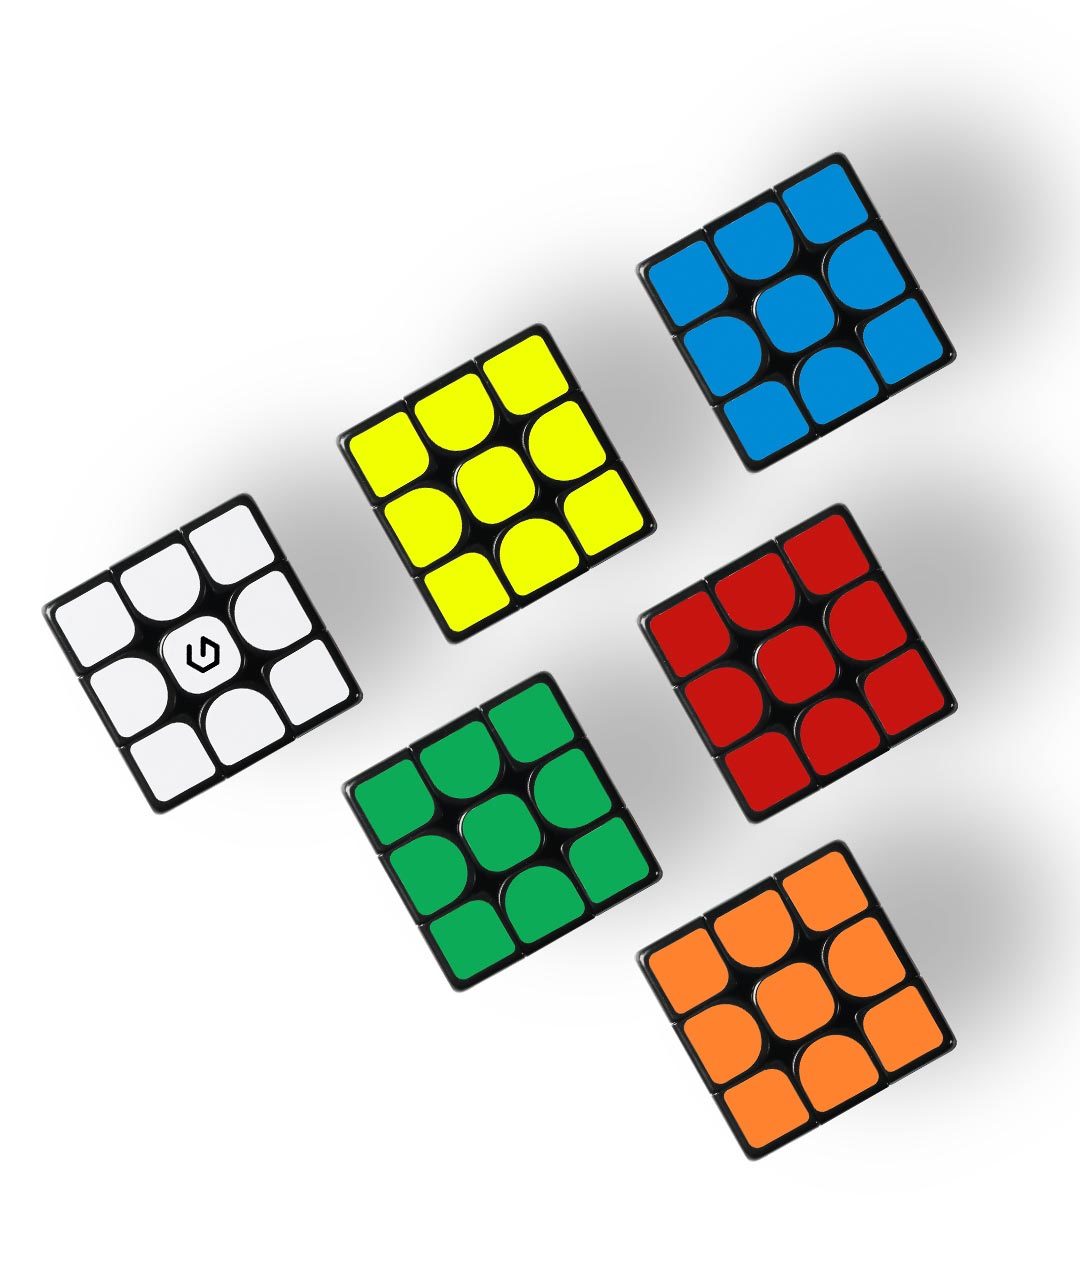 Головоломка giiker. Кубик Рубика Xiaomi Giiker counting Magnetic Cube m3. Кубик Рубика Xiaomi Giiker m3. Кубик Рубика Xiaomi Giiker Design off Magnetic Cube m3. Головоломка Xiaomi 3x3x3 Giiker m3.